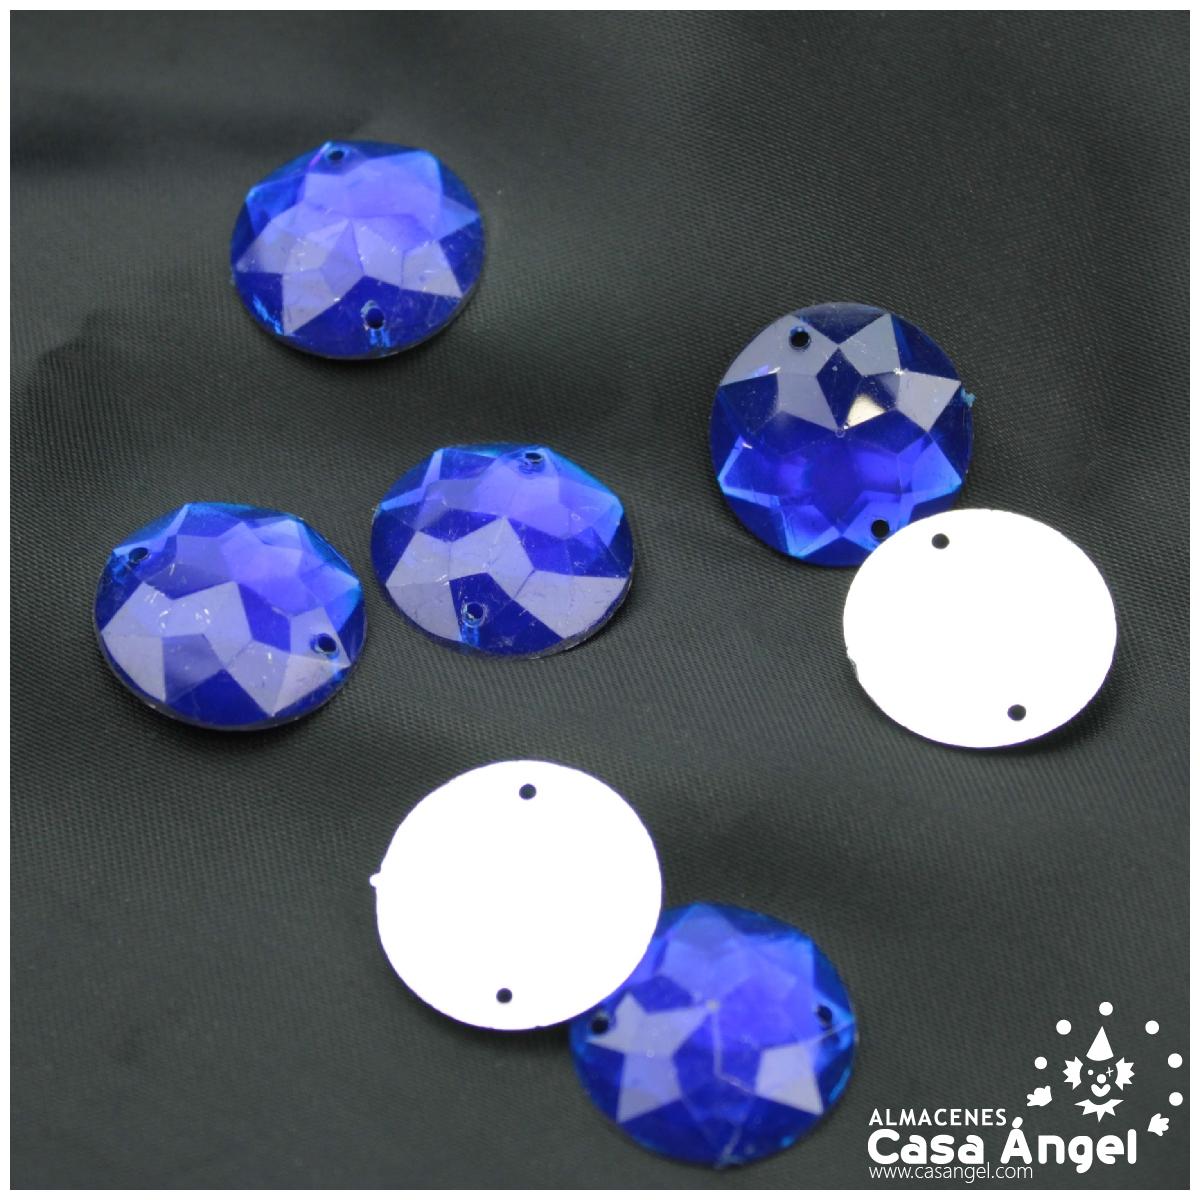  NVTHINH 2003TH AB - Piedras redondas para coser en cristal y  cristales cosidos para manualidades (color: 0.787 in, 24 unidades) : Arte y  Manualidades